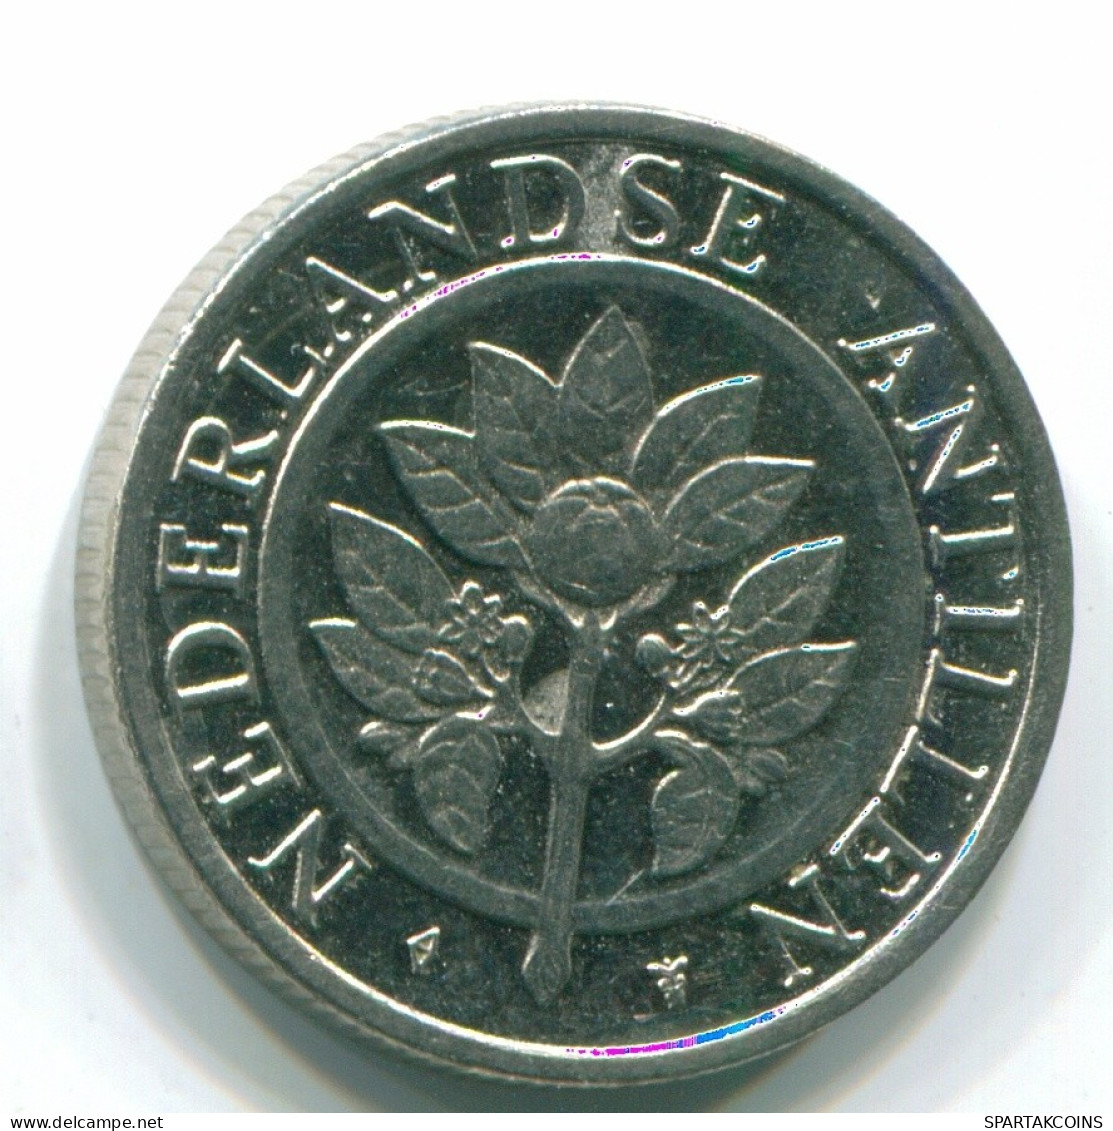 25 CENTS 1993 NETHERLANDS ANTILLES Nickel Colonial Coin #S11291.U.A - Niederländische Antillen